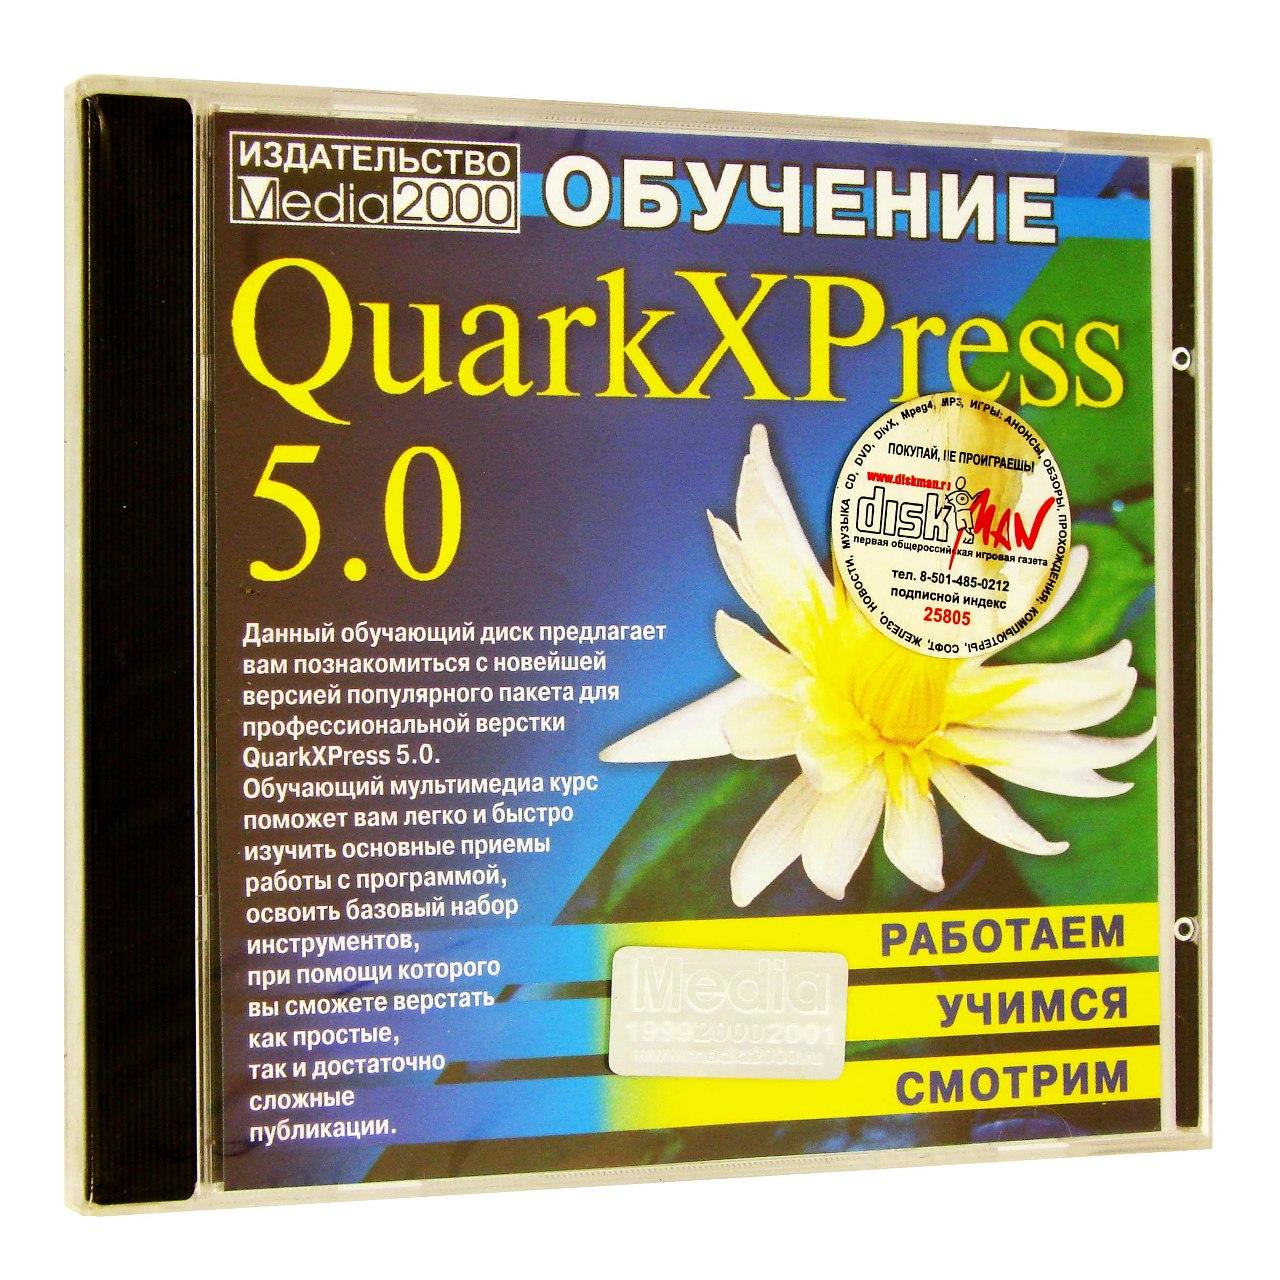 Компьютерный компакт-диск Обучение Quark XPress 5 (PC), фирма "Медиа 2000", 1CD